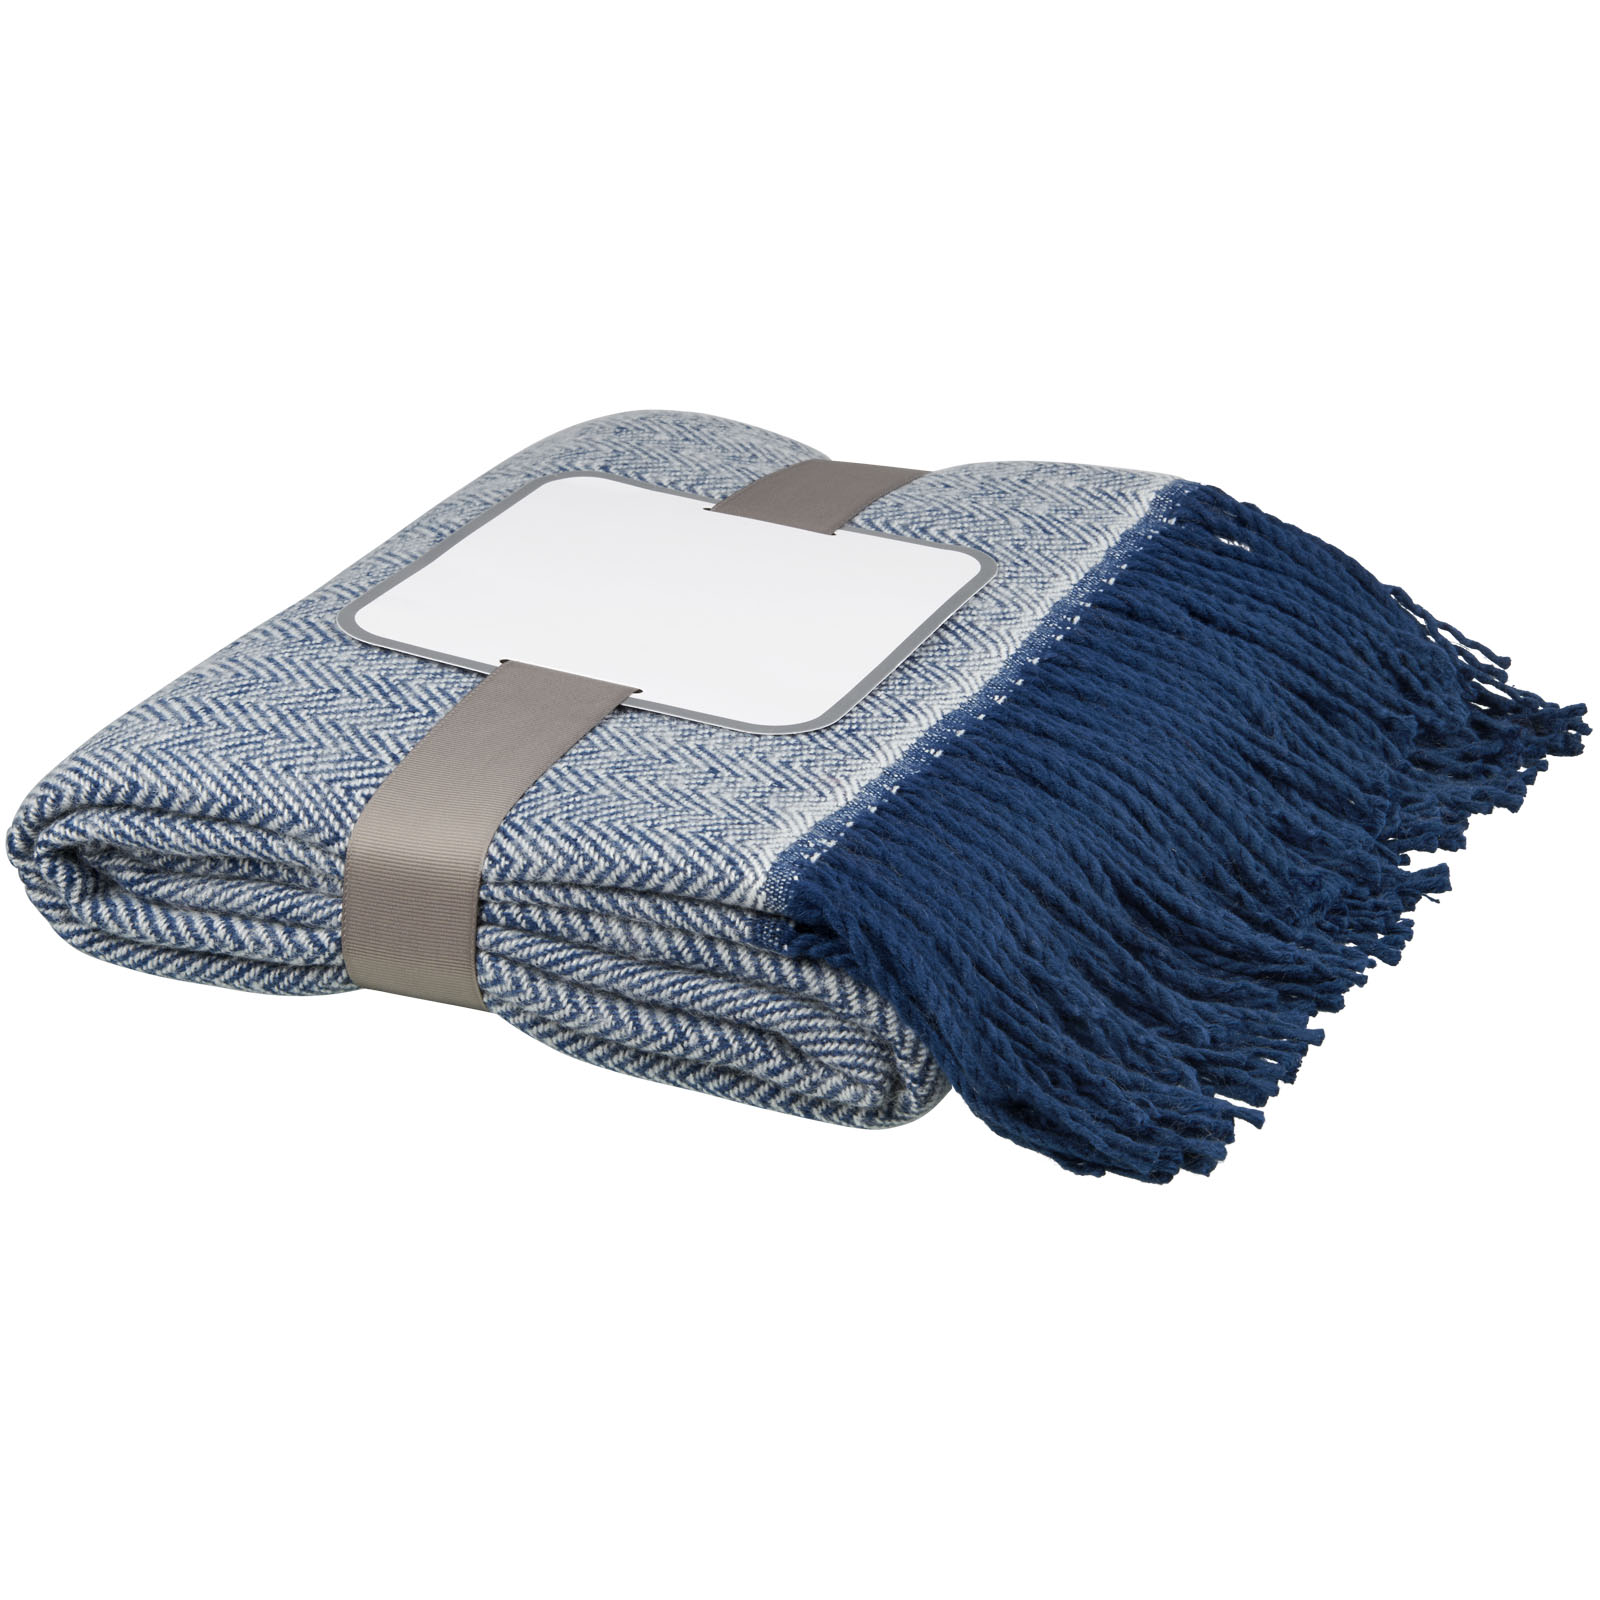 Advertising Blankets - Haven herringbone throw blanket - 0